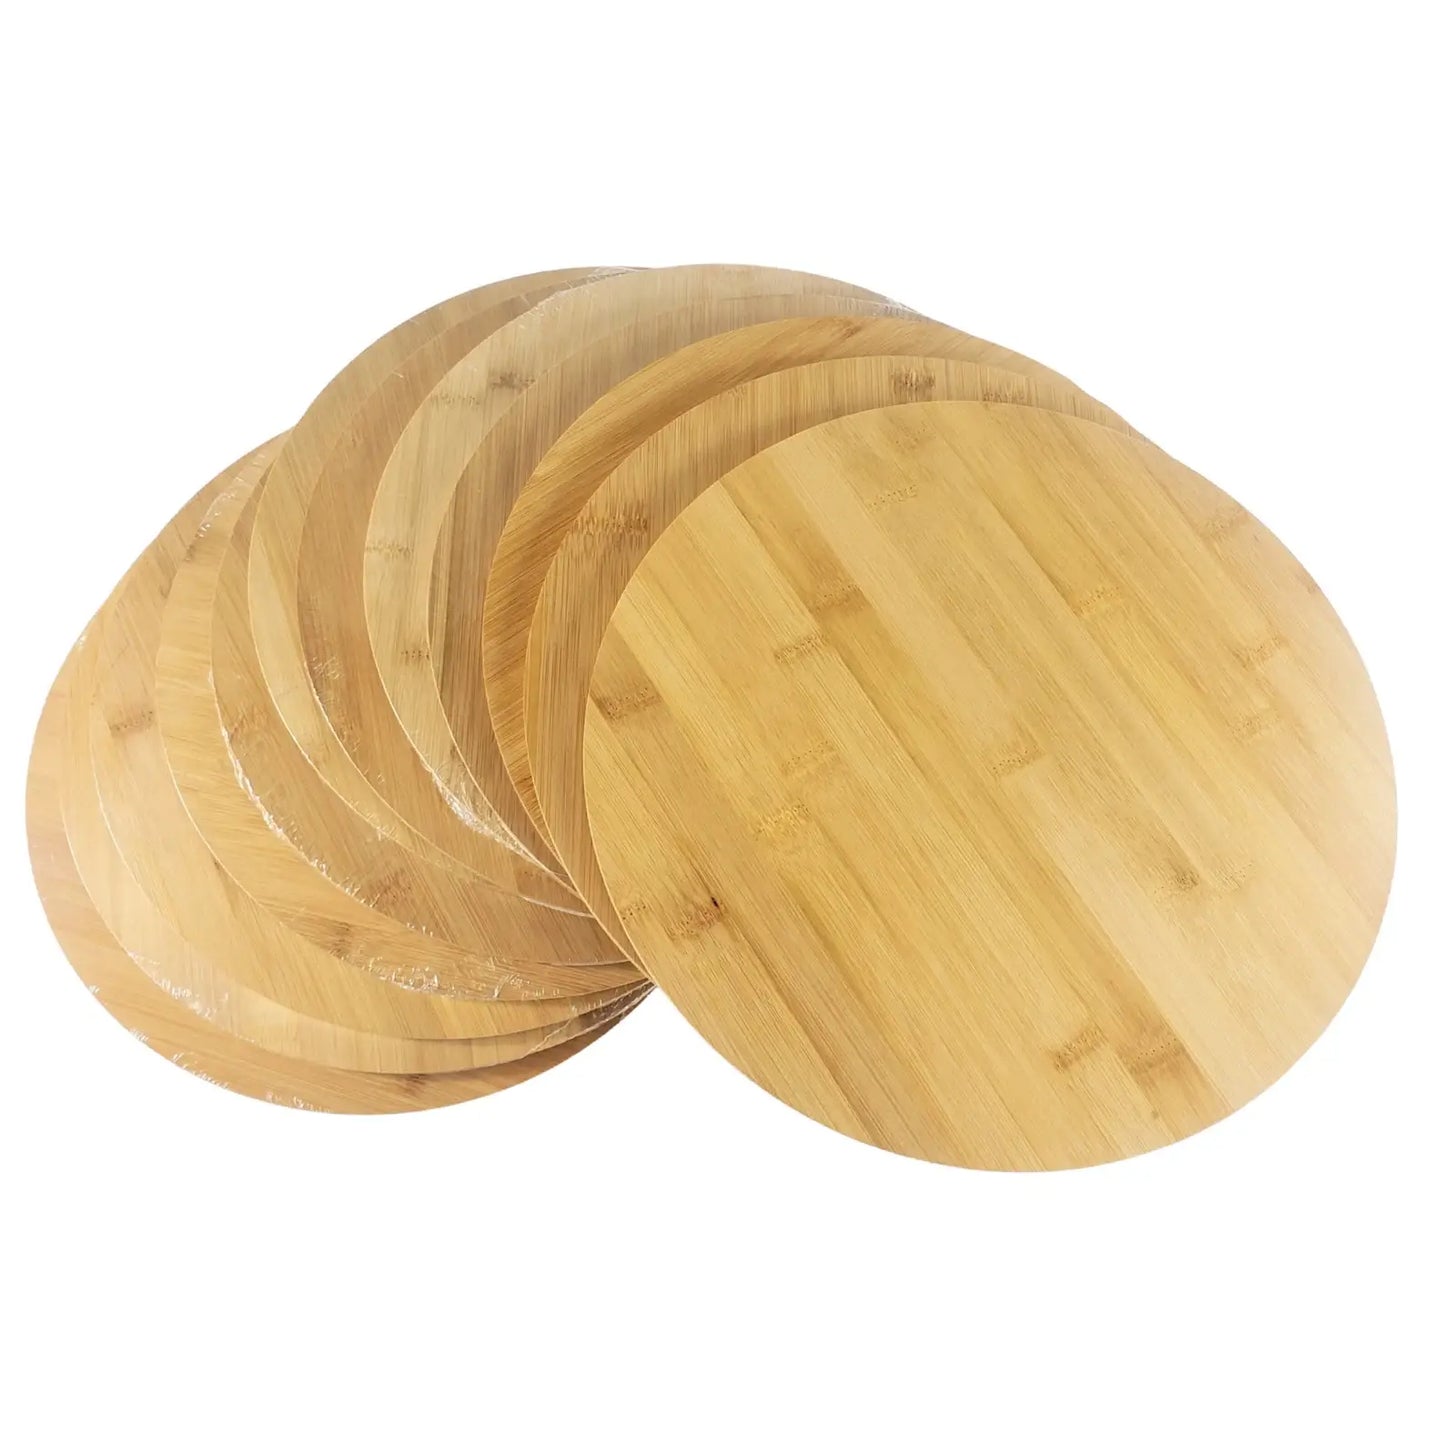 12" Round Bulk Plain Bamboo Cutting Board